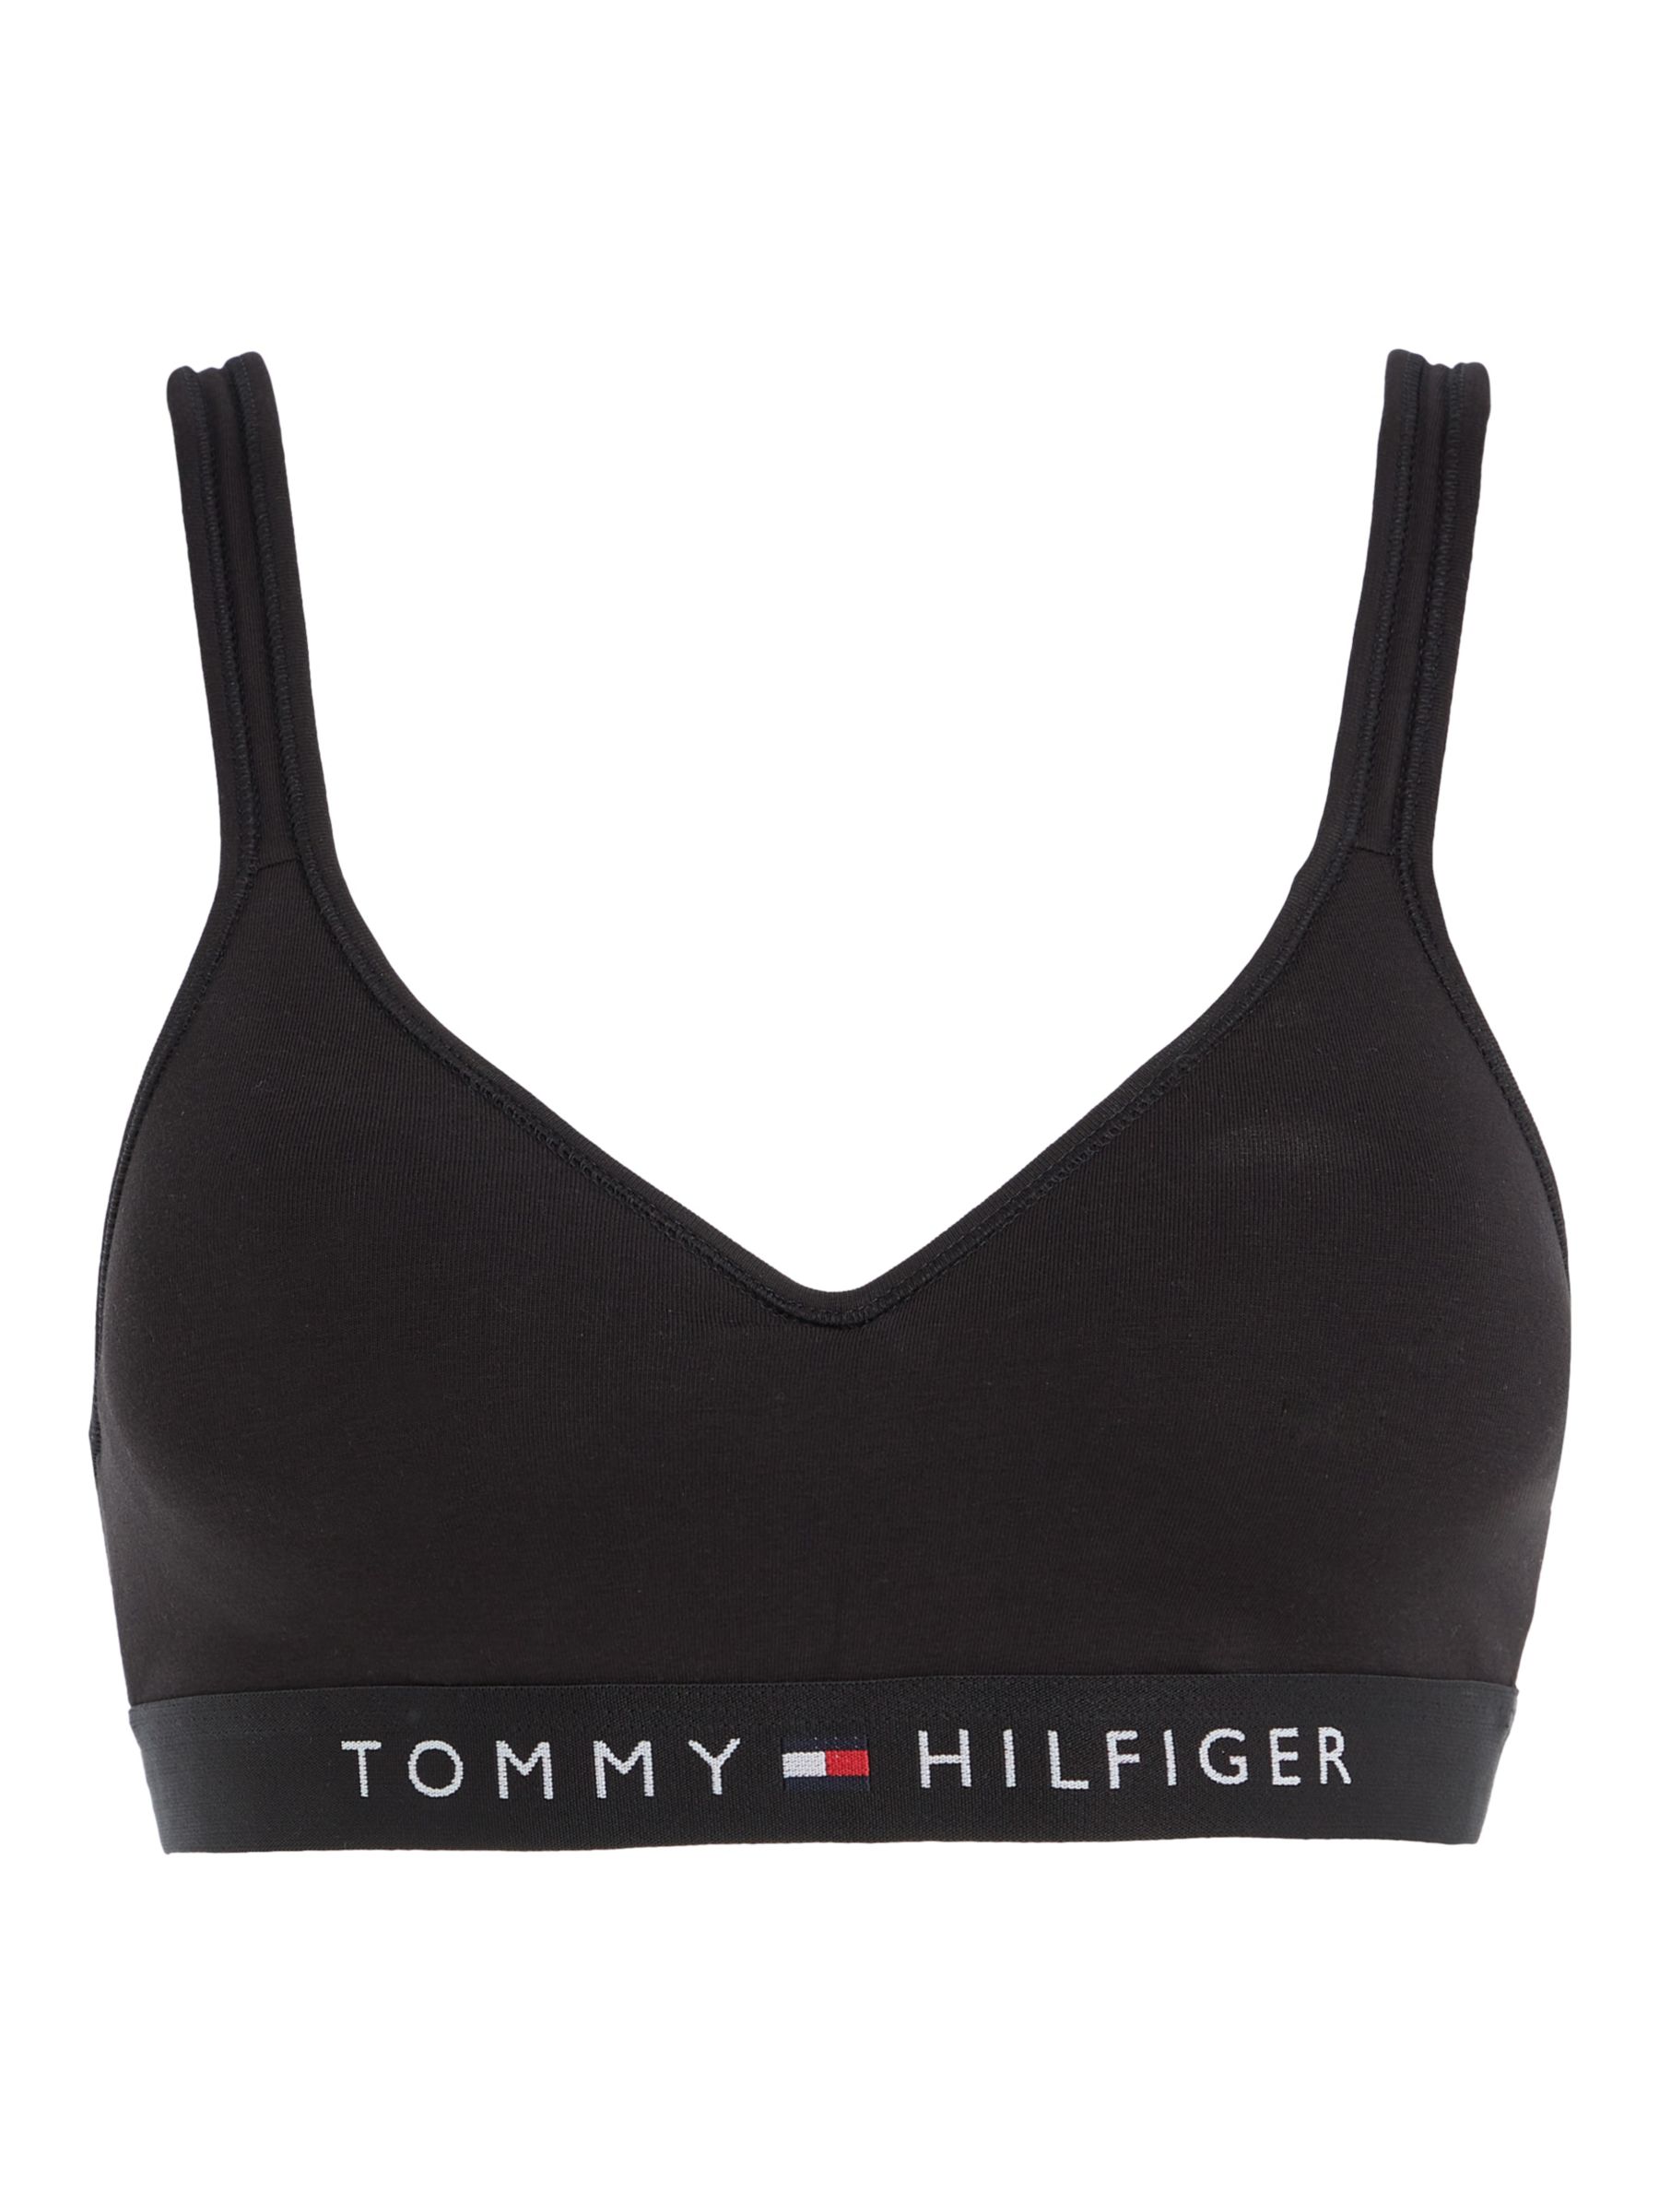 Buy Tommy Hilfiger V-Neck Padded Bralette, Black Online at johnlewis.com